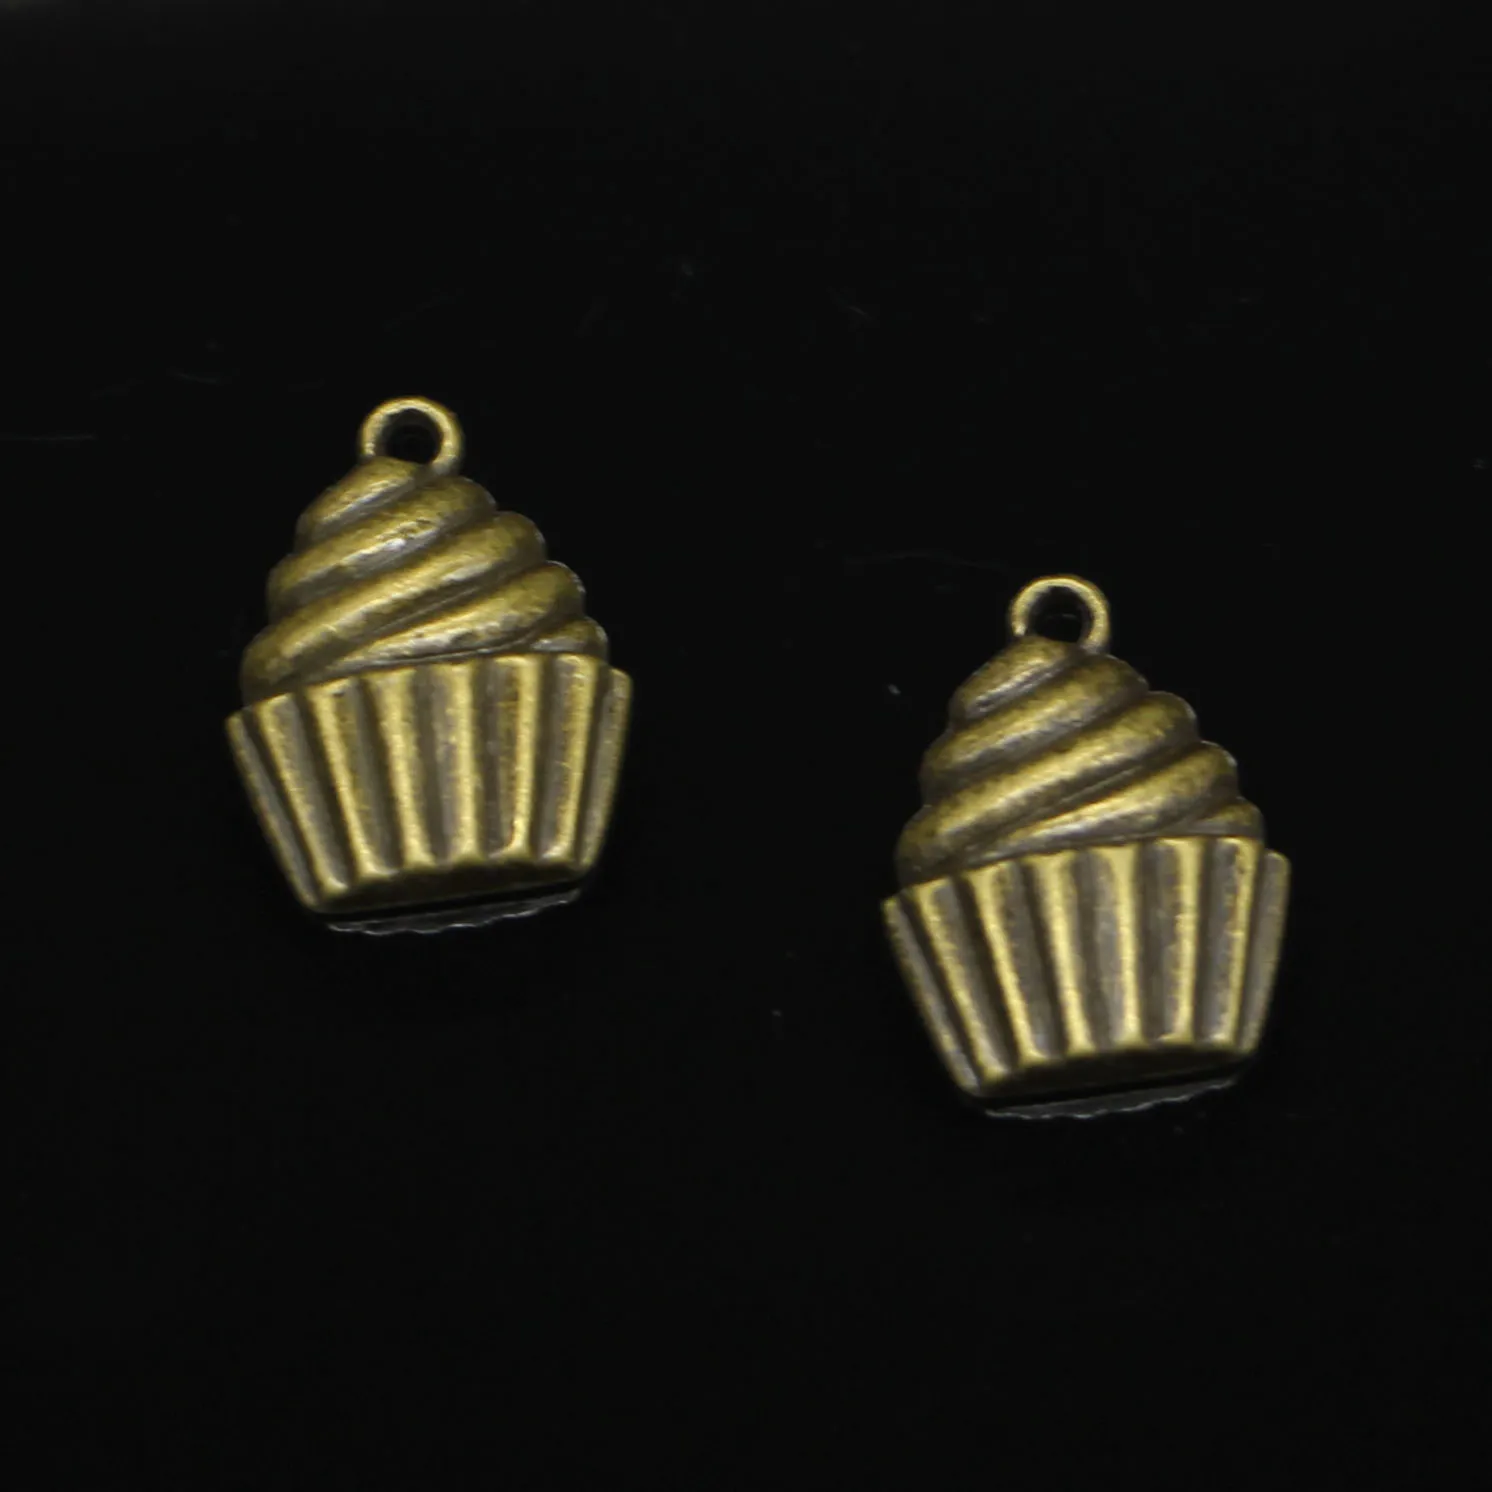 86pcs Zinc Alloy Charms Antique Bronze Plated Cupcake Charms для ювелирных изделий для украшений ручной работы 20*15 мм